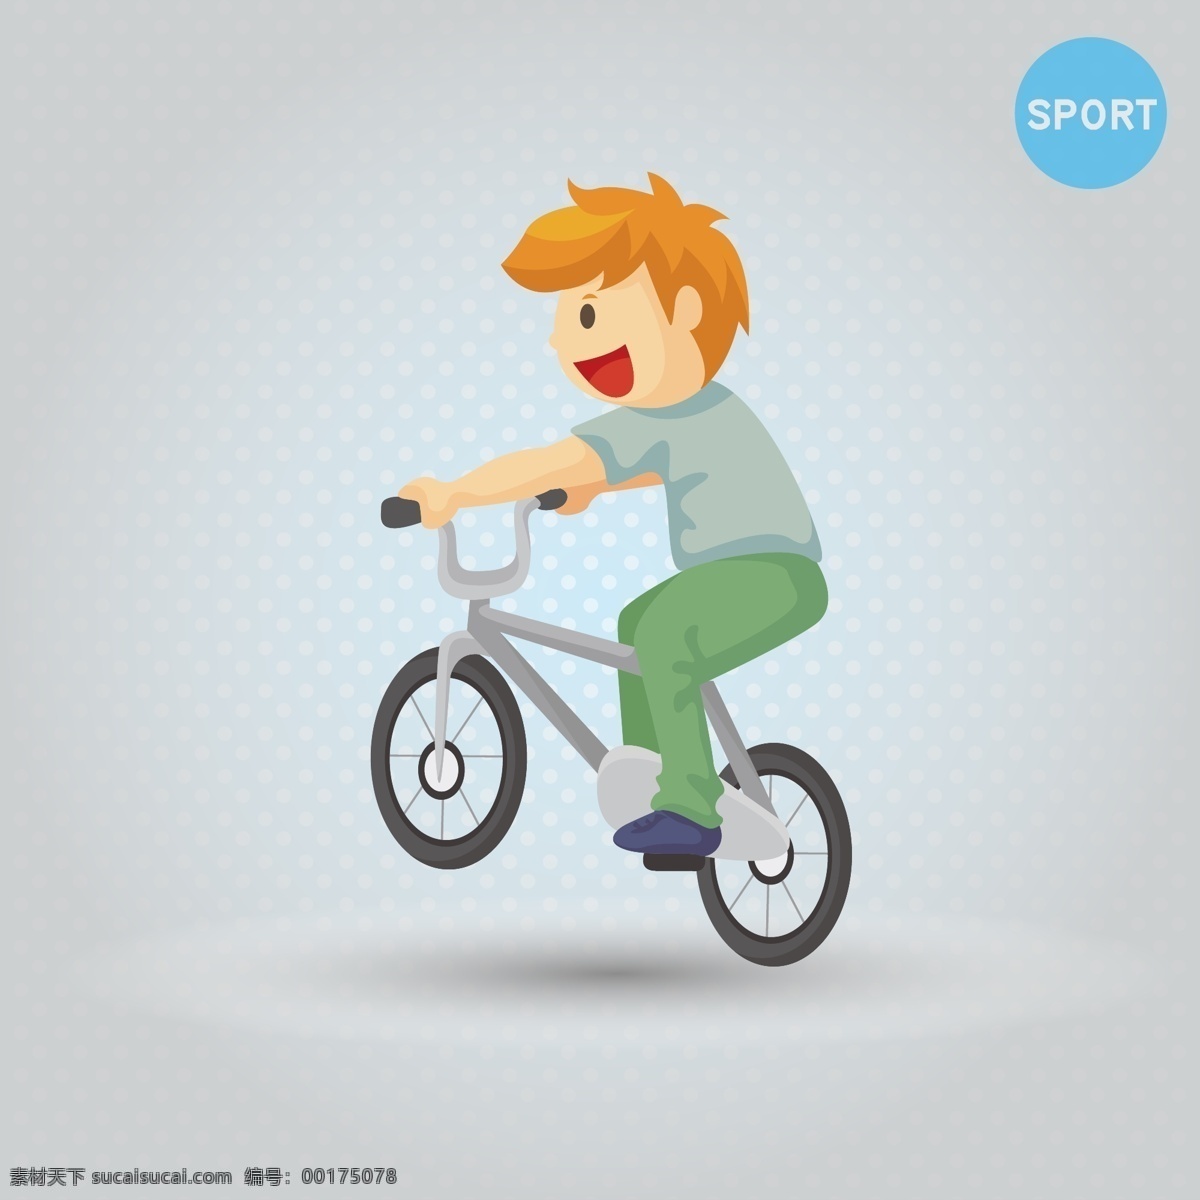 踩单车的男孩 运动 矢量运动 运动矢量 sport 运动男生 户外运动 健康 单车 骑单车 骑单车的男孩 运动人物矢量 日常生活 矢量人物 矢量